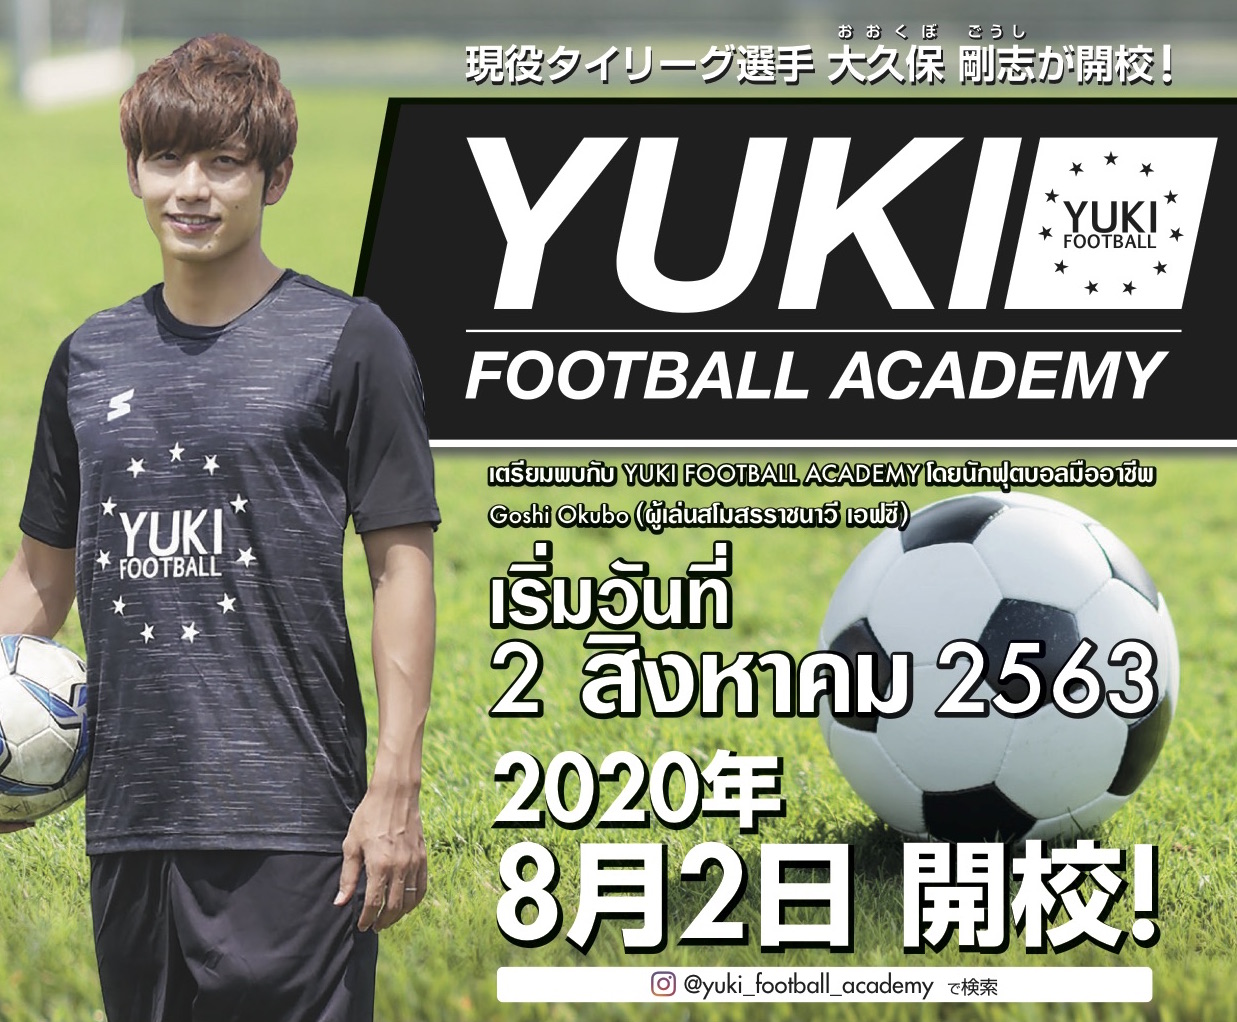 Yuki Football Academy Voice Hobby Club